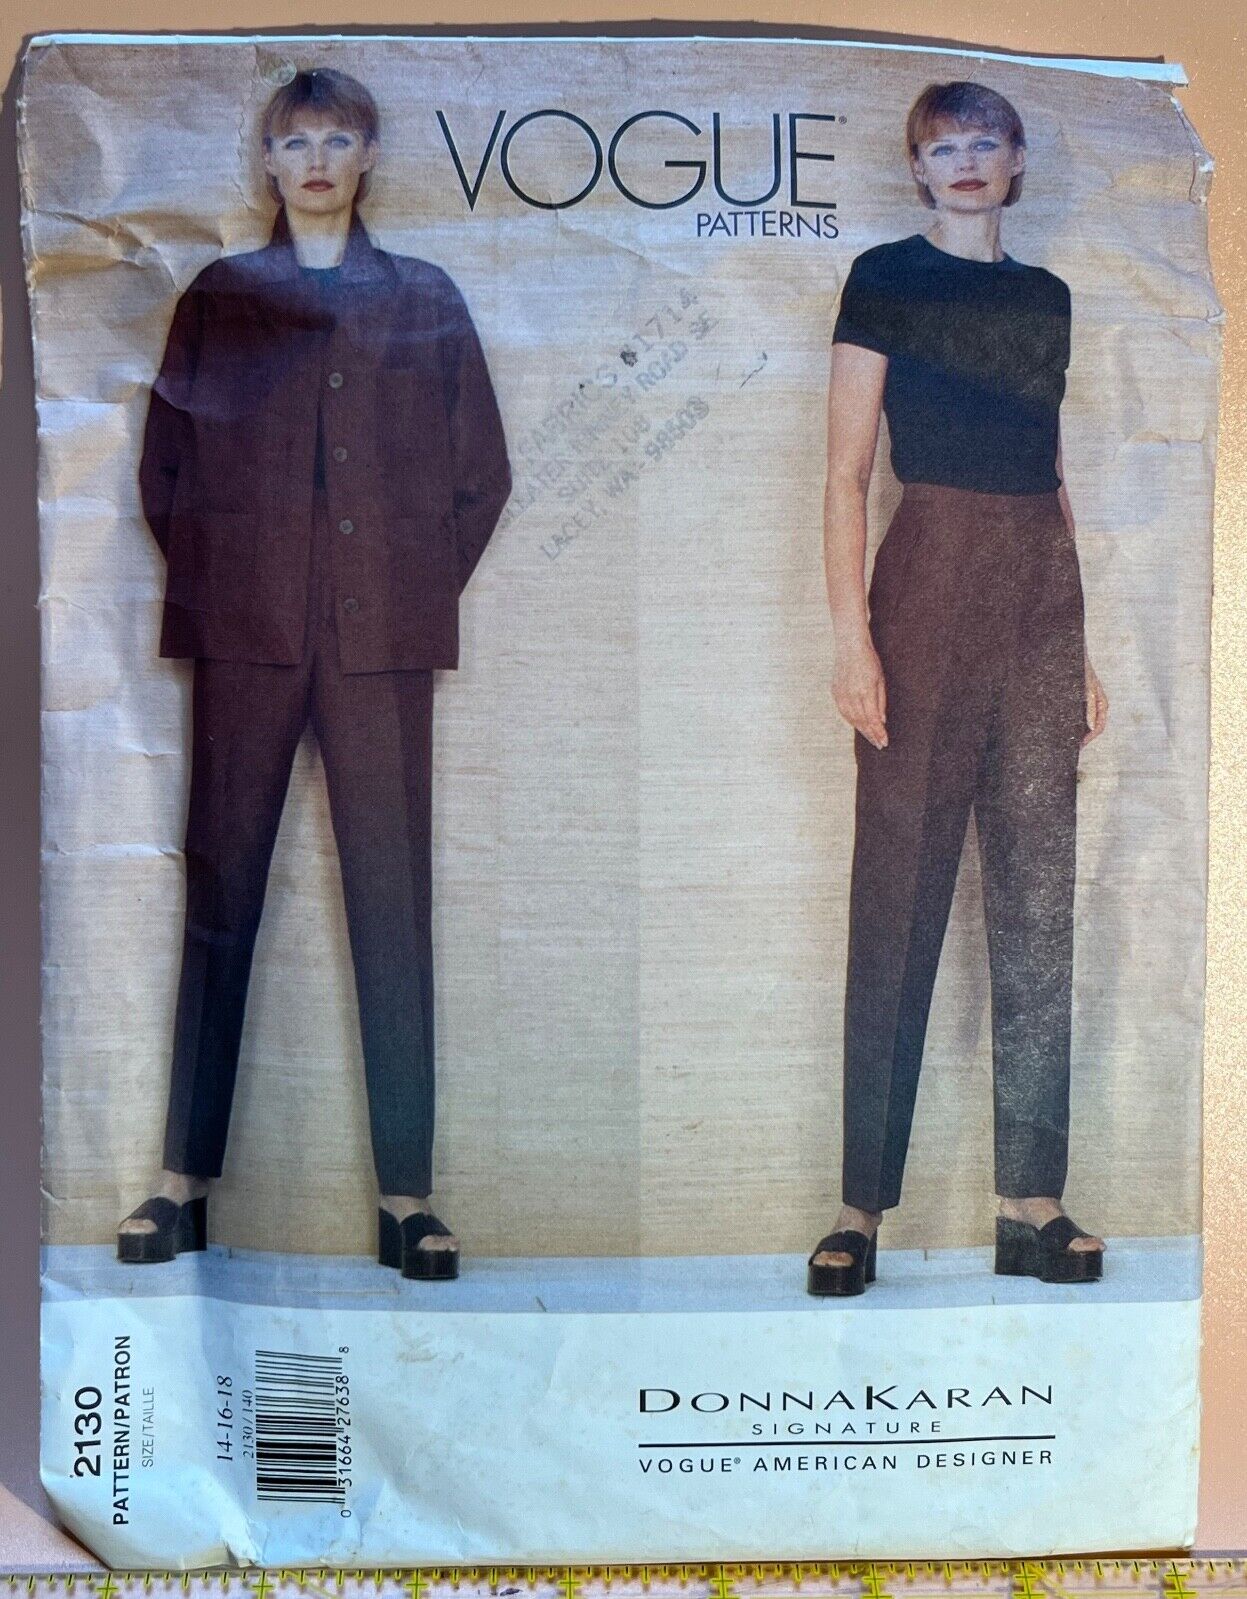 VTG Vogue American Designer Pattern #2130 DONNA KARAN Jacket Pants Top 14-16-18